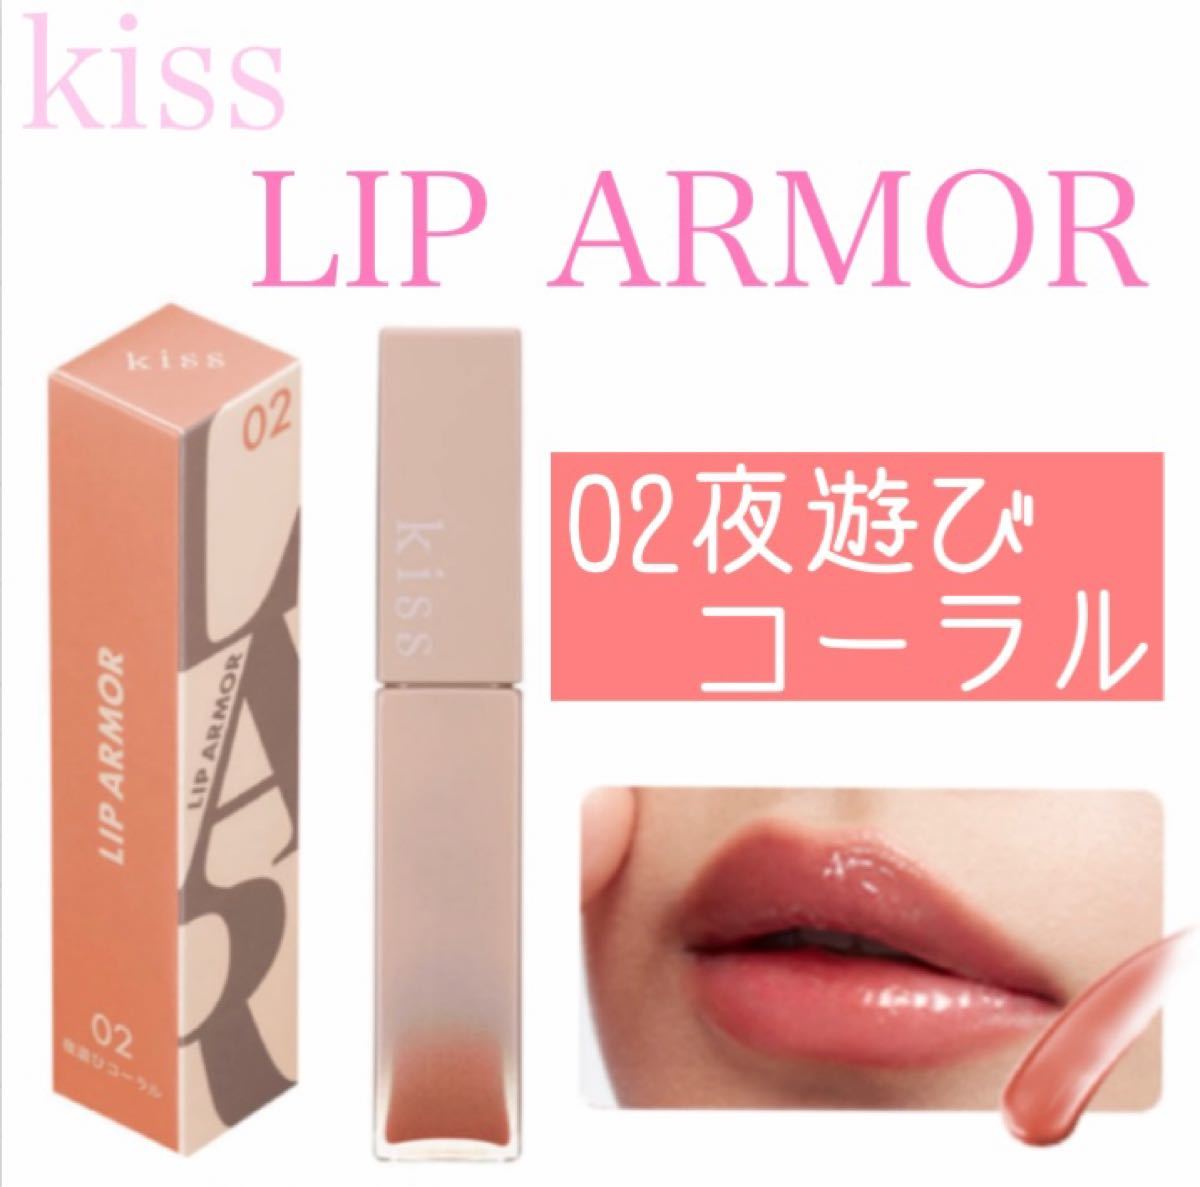 kiss キス リップアーマー ティント LIP ARMOR セット クーポン販売中 